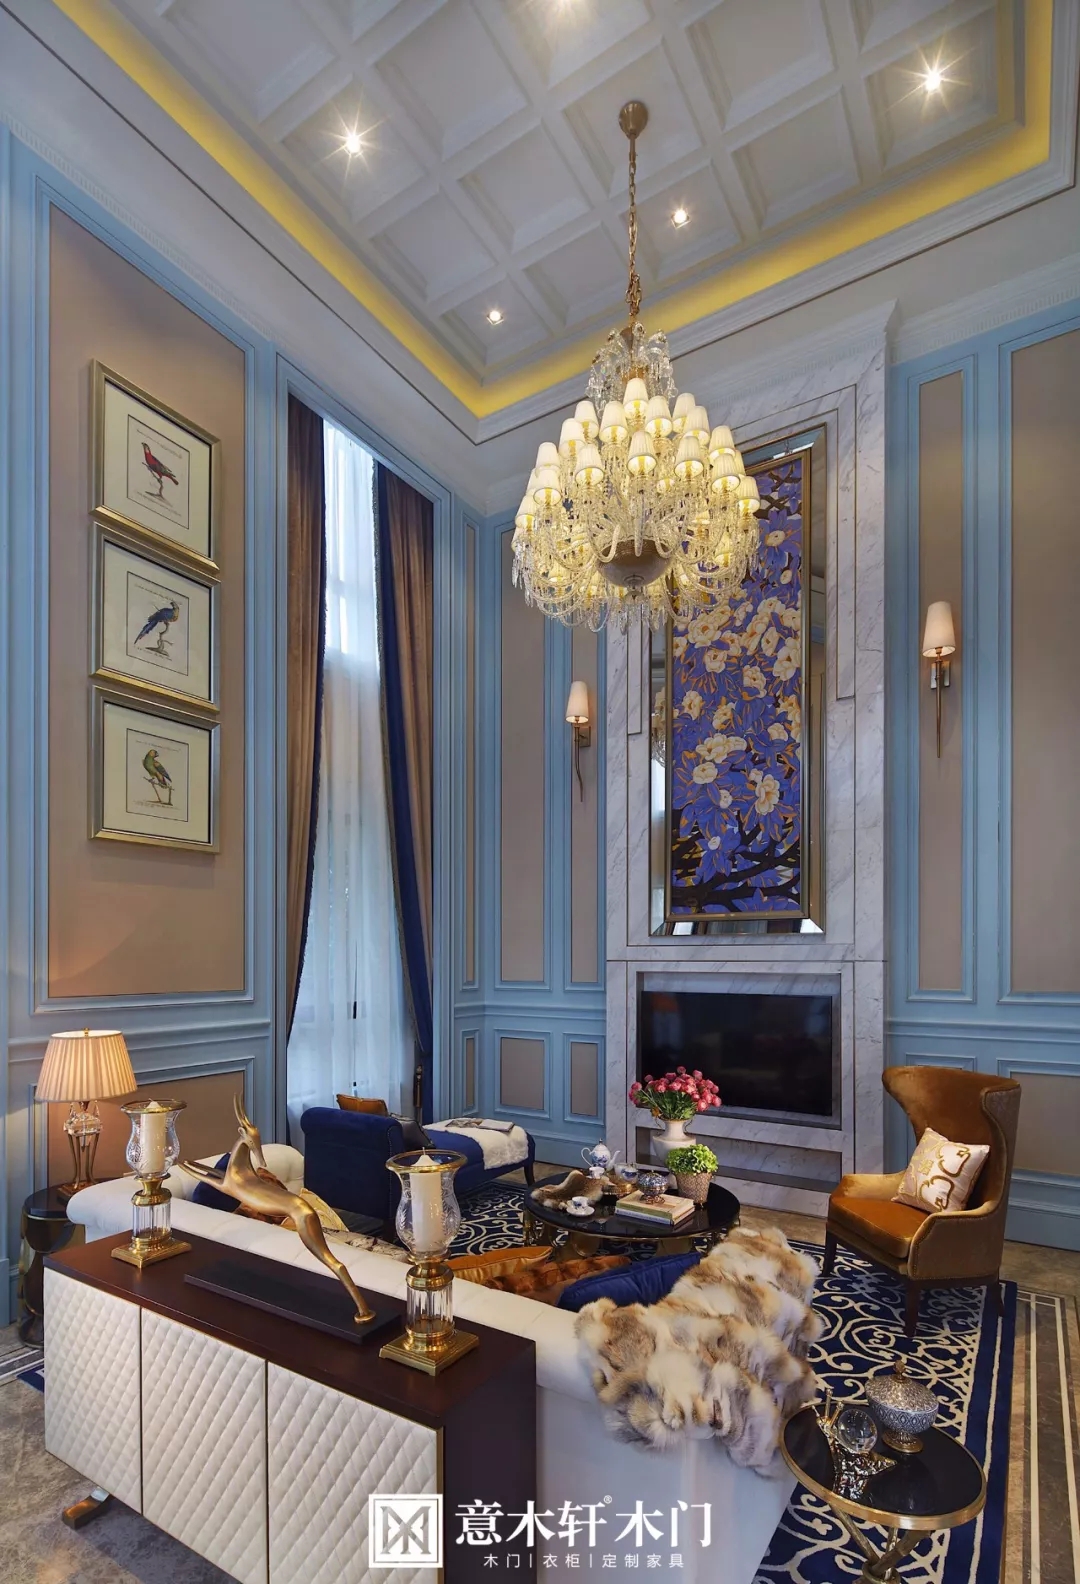 意木轩整装案例,用蓝色经典缔造欧式风格的优雅与贵气（图）_6